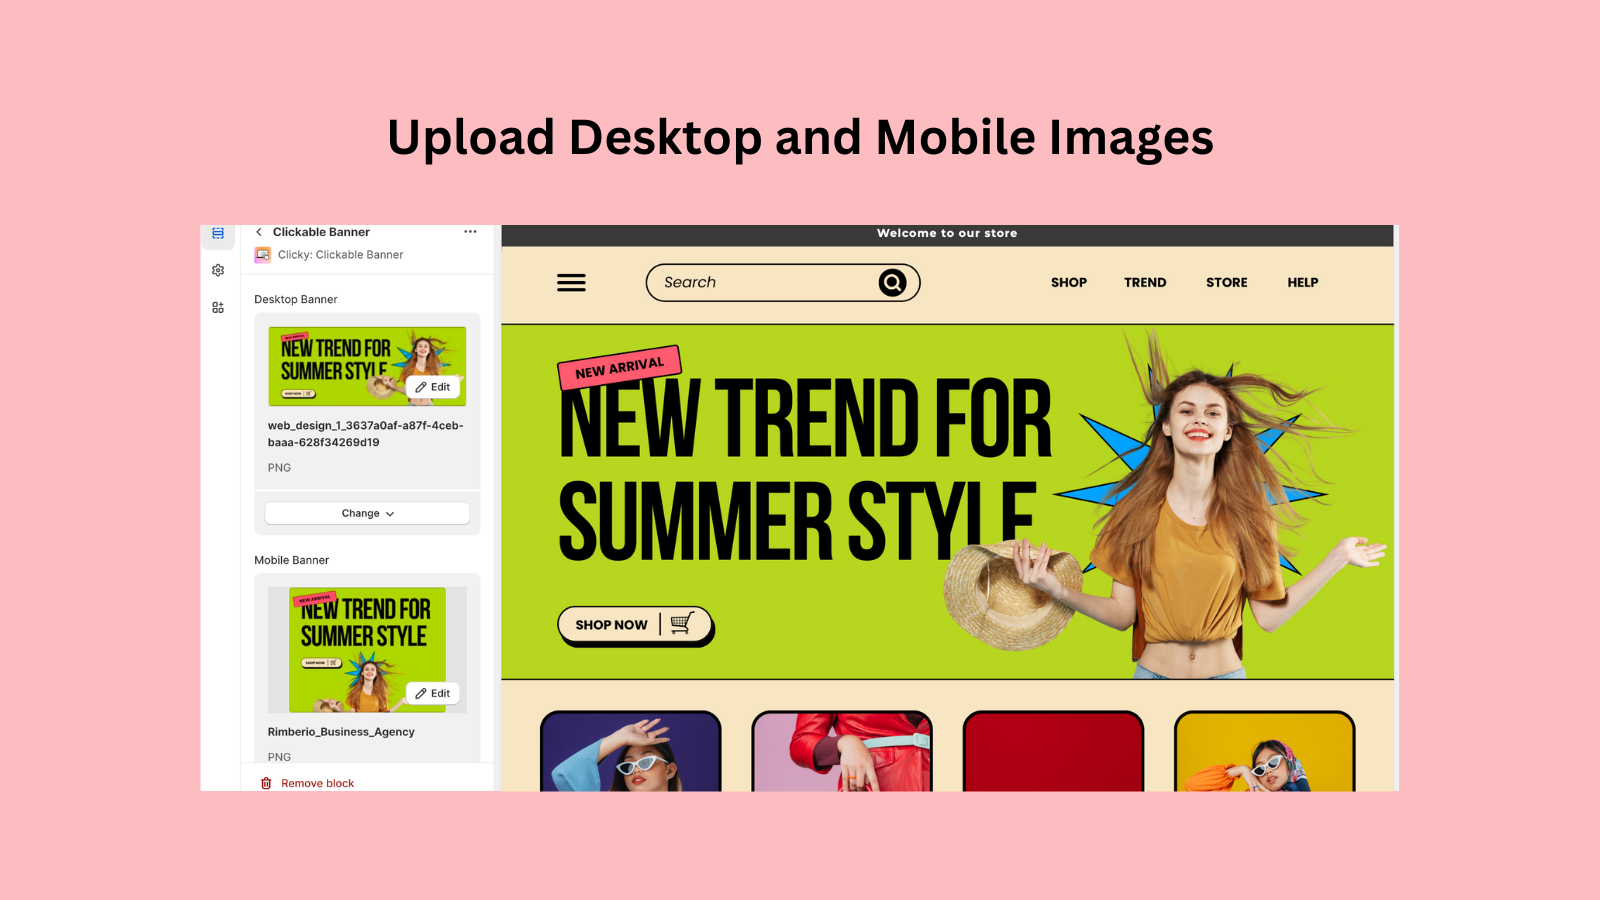 Upload desktop and mobile images